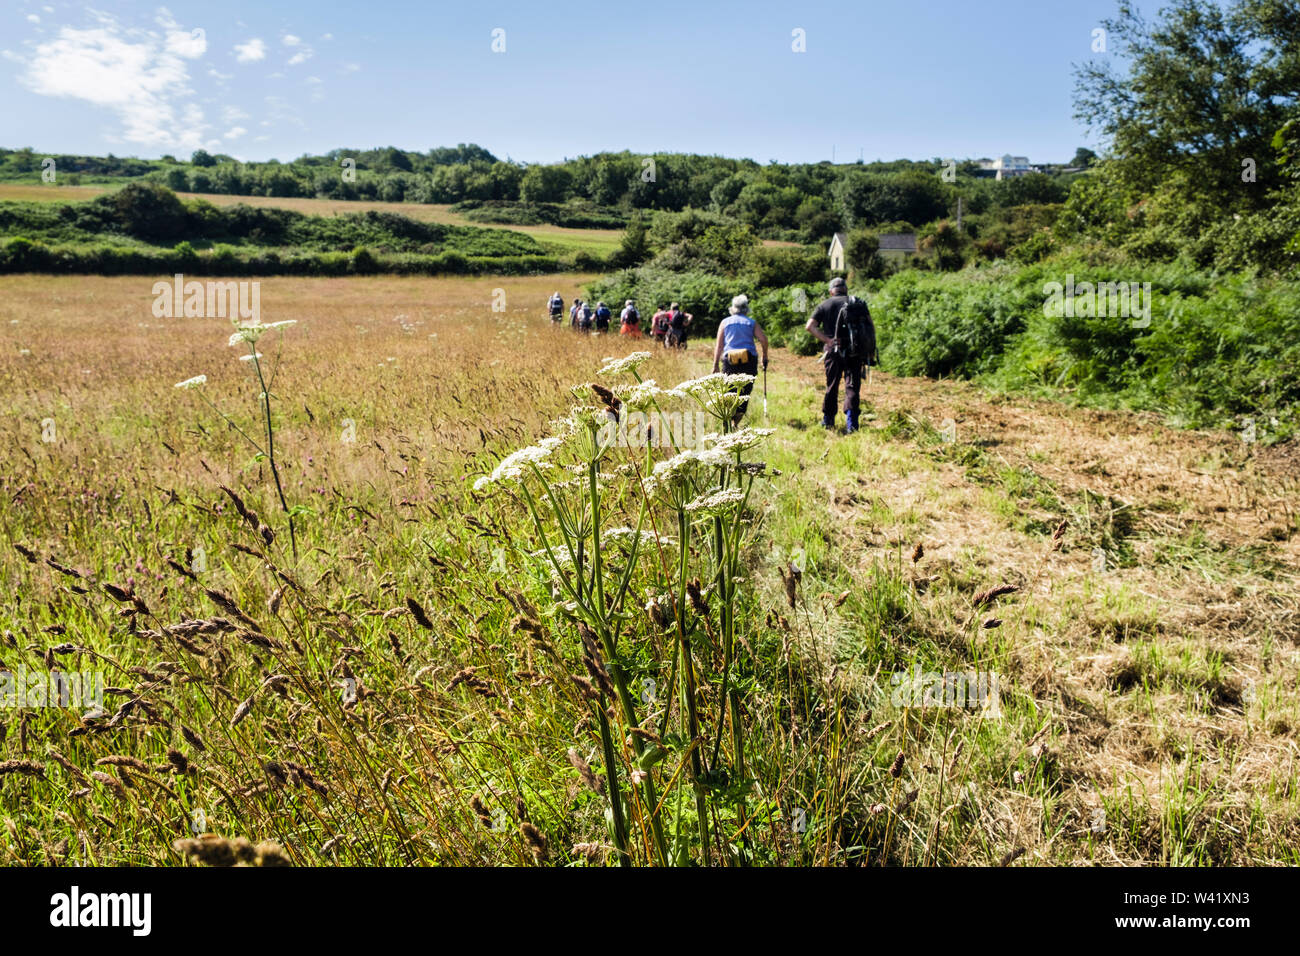 Les promeneurs marchant sur un sentier pour couper à travers un champ de fleurs sauvages dans summercountry côté. Llaneilian, Isle of Anglesey, au nord du Pays de Galles, Royaume-Uni, Angleterre Banque D'Images